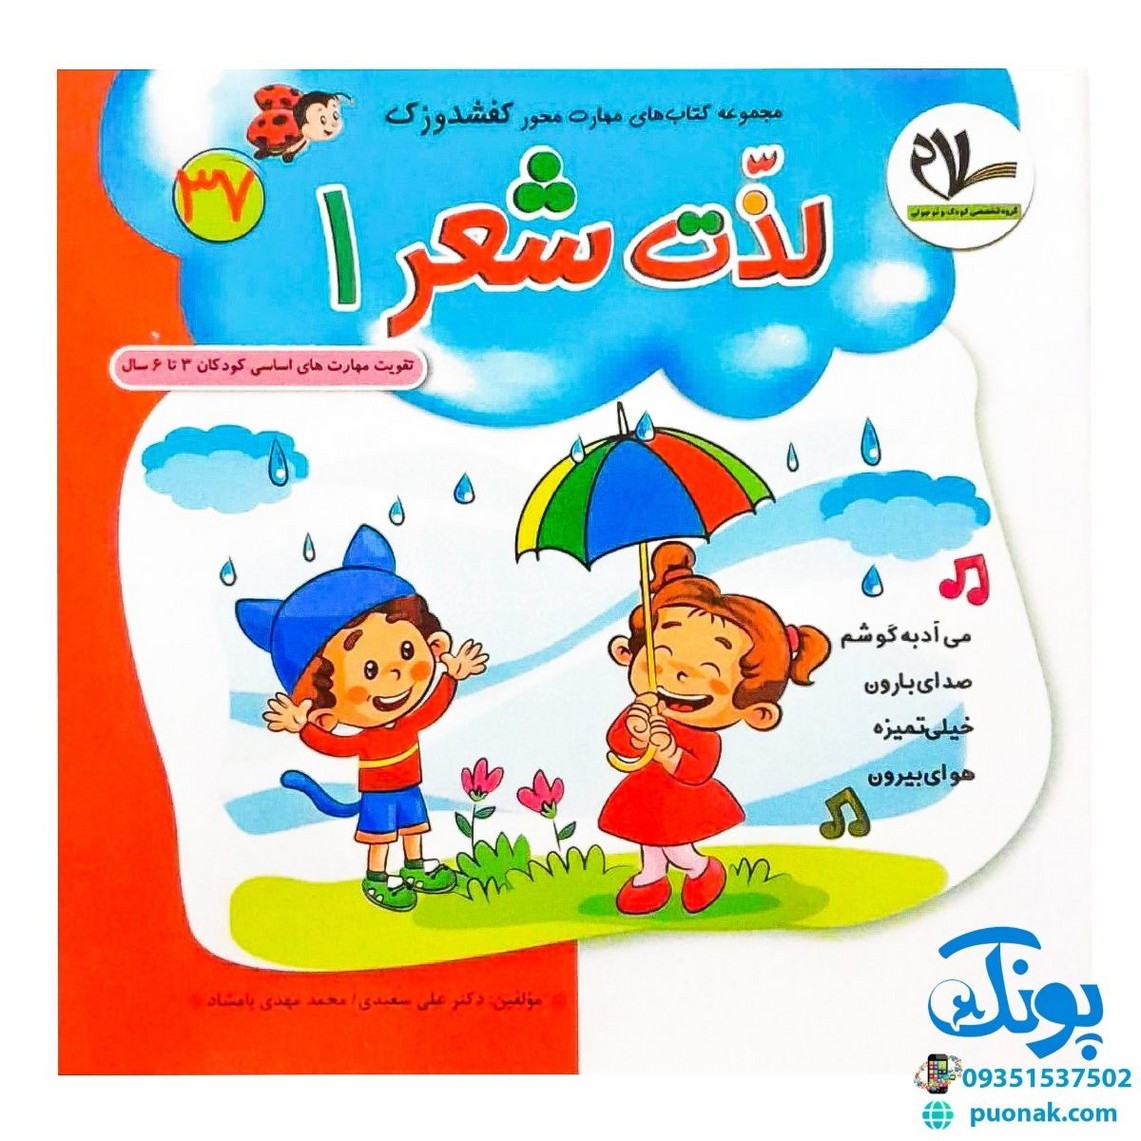 مجموعه کتاب های کفشدوزک جلد سی و هفتم (لذت شعر ۱) تقویت مهارت های اساسی کودکان ۳ تا ۶ سال